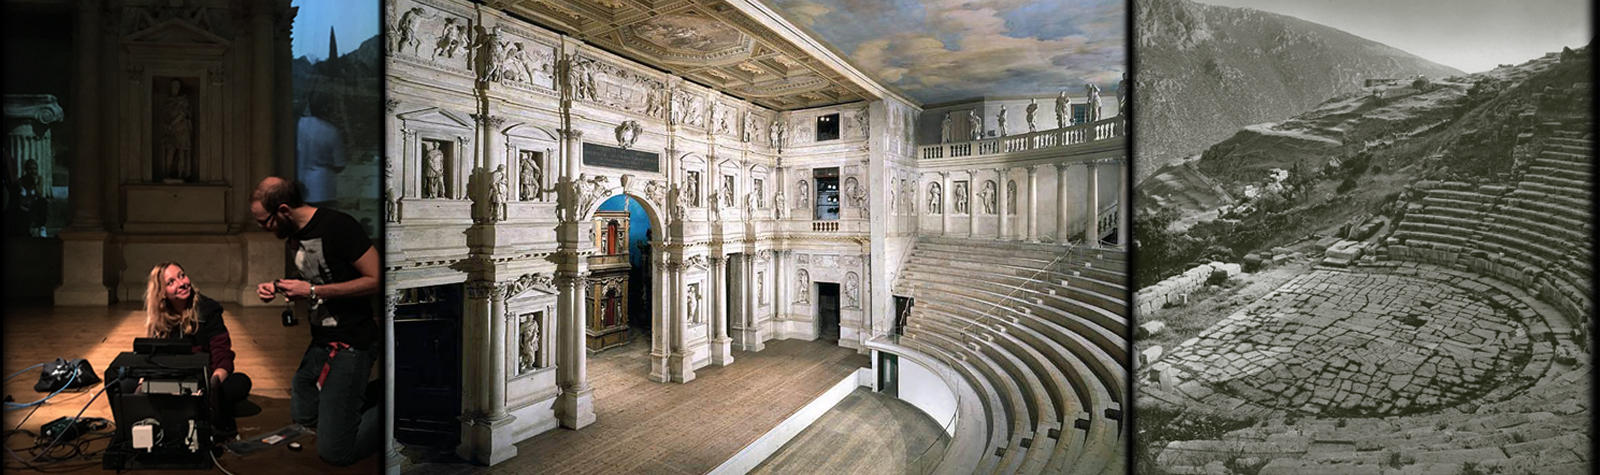 Teatro classico e backstage di Delfi, cantata